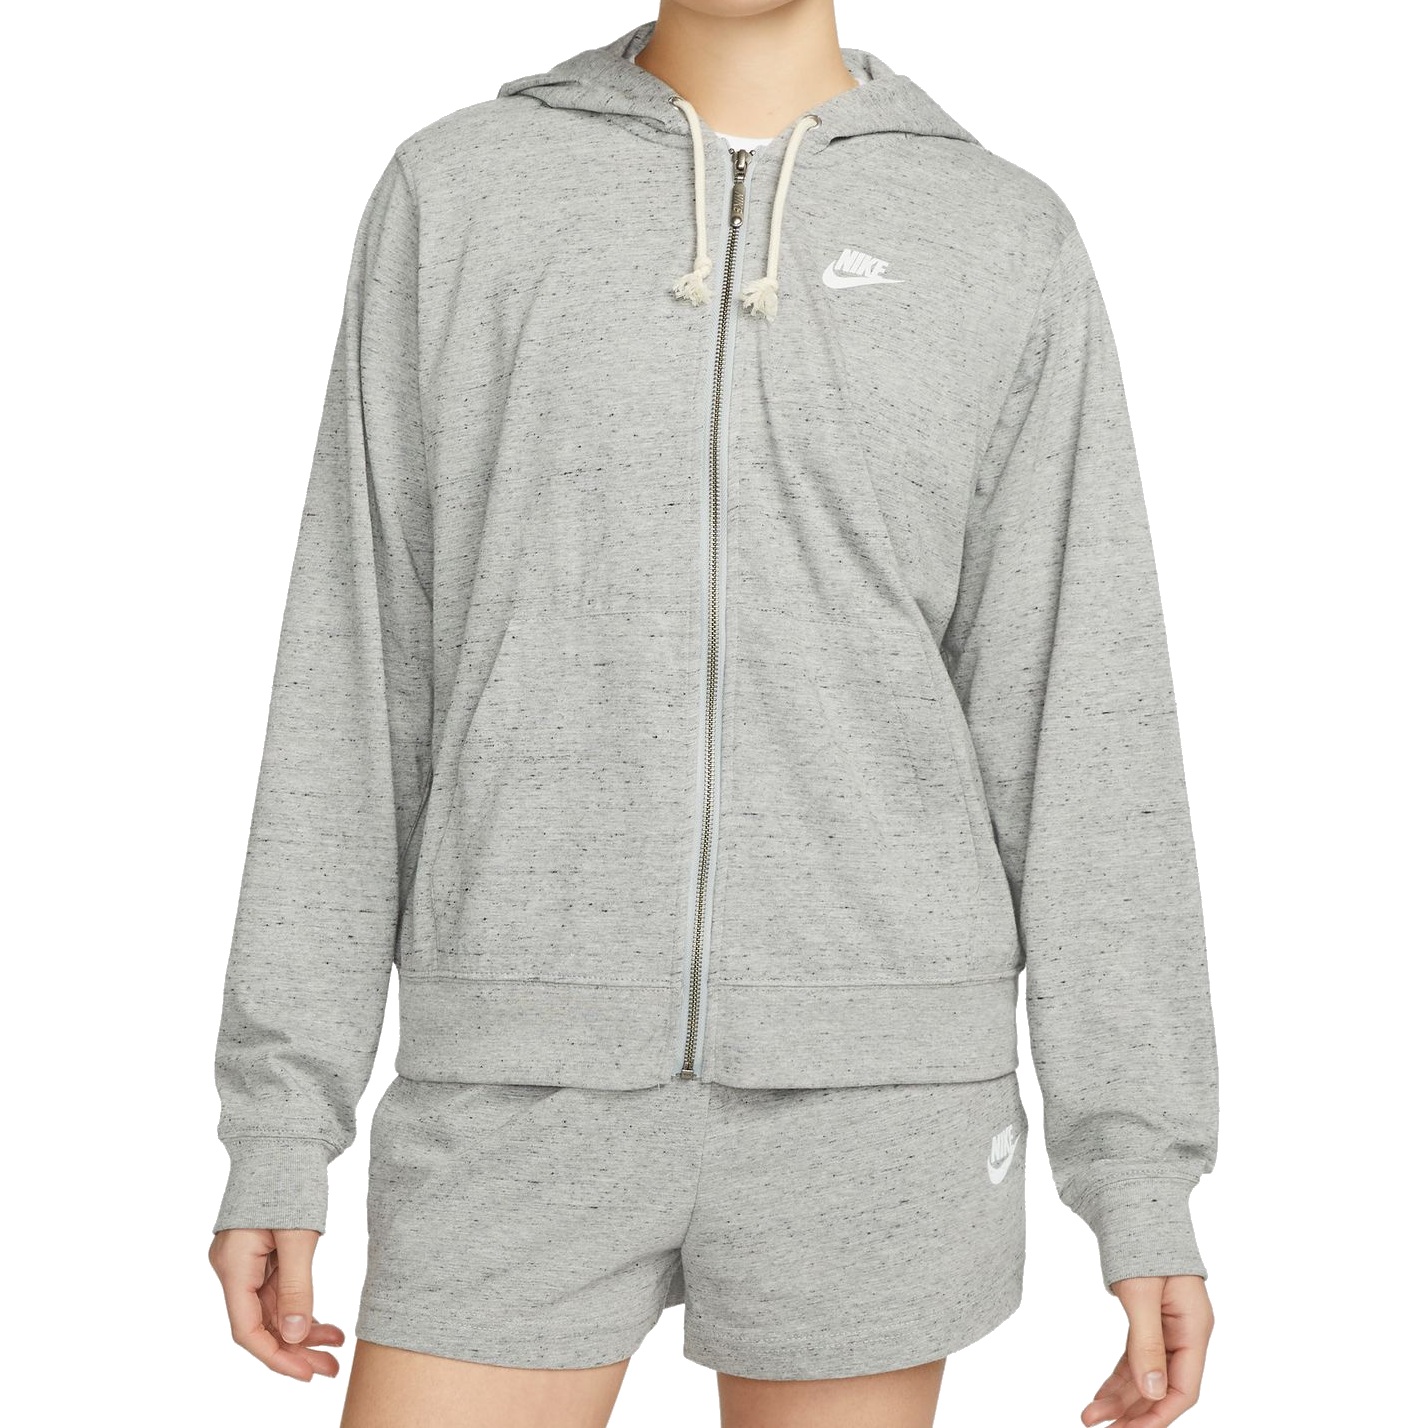 Immagine di Nike Giacca con Cappuccio Donna - Sportswear Gym Vintage - dark grey heather/white DM6386-063